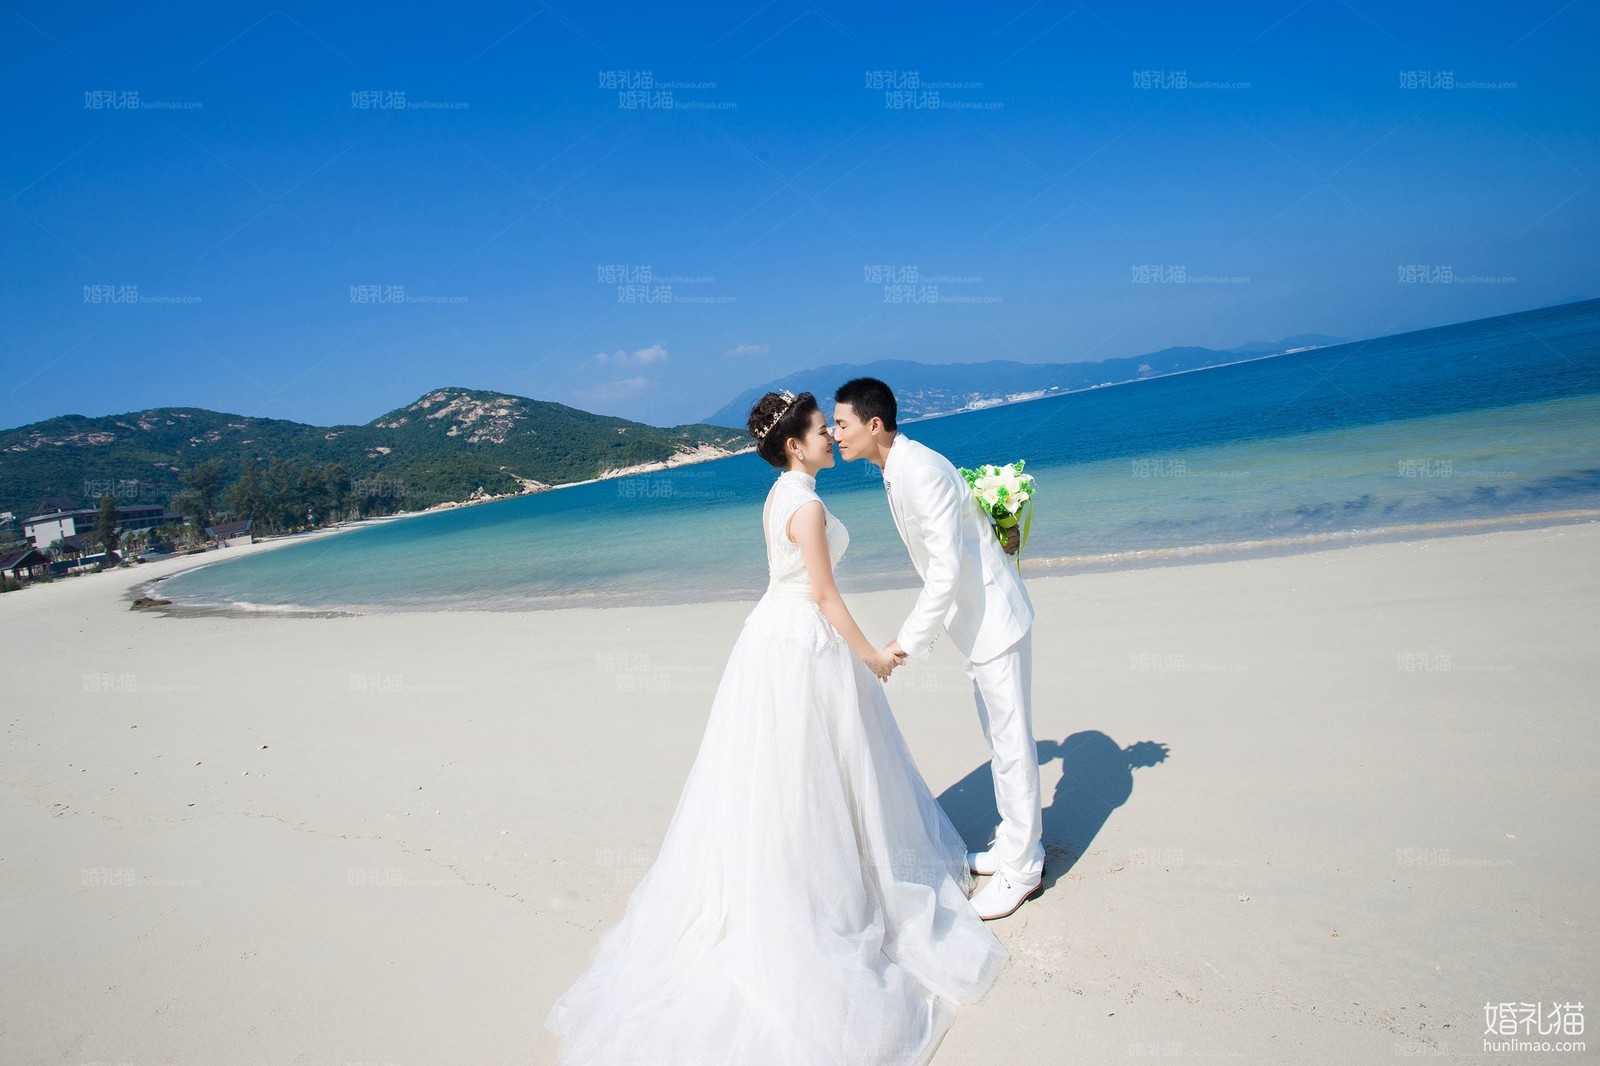 海景婚纱照,[海景, 沙滩],深圳婚纱照,婚纱照图片